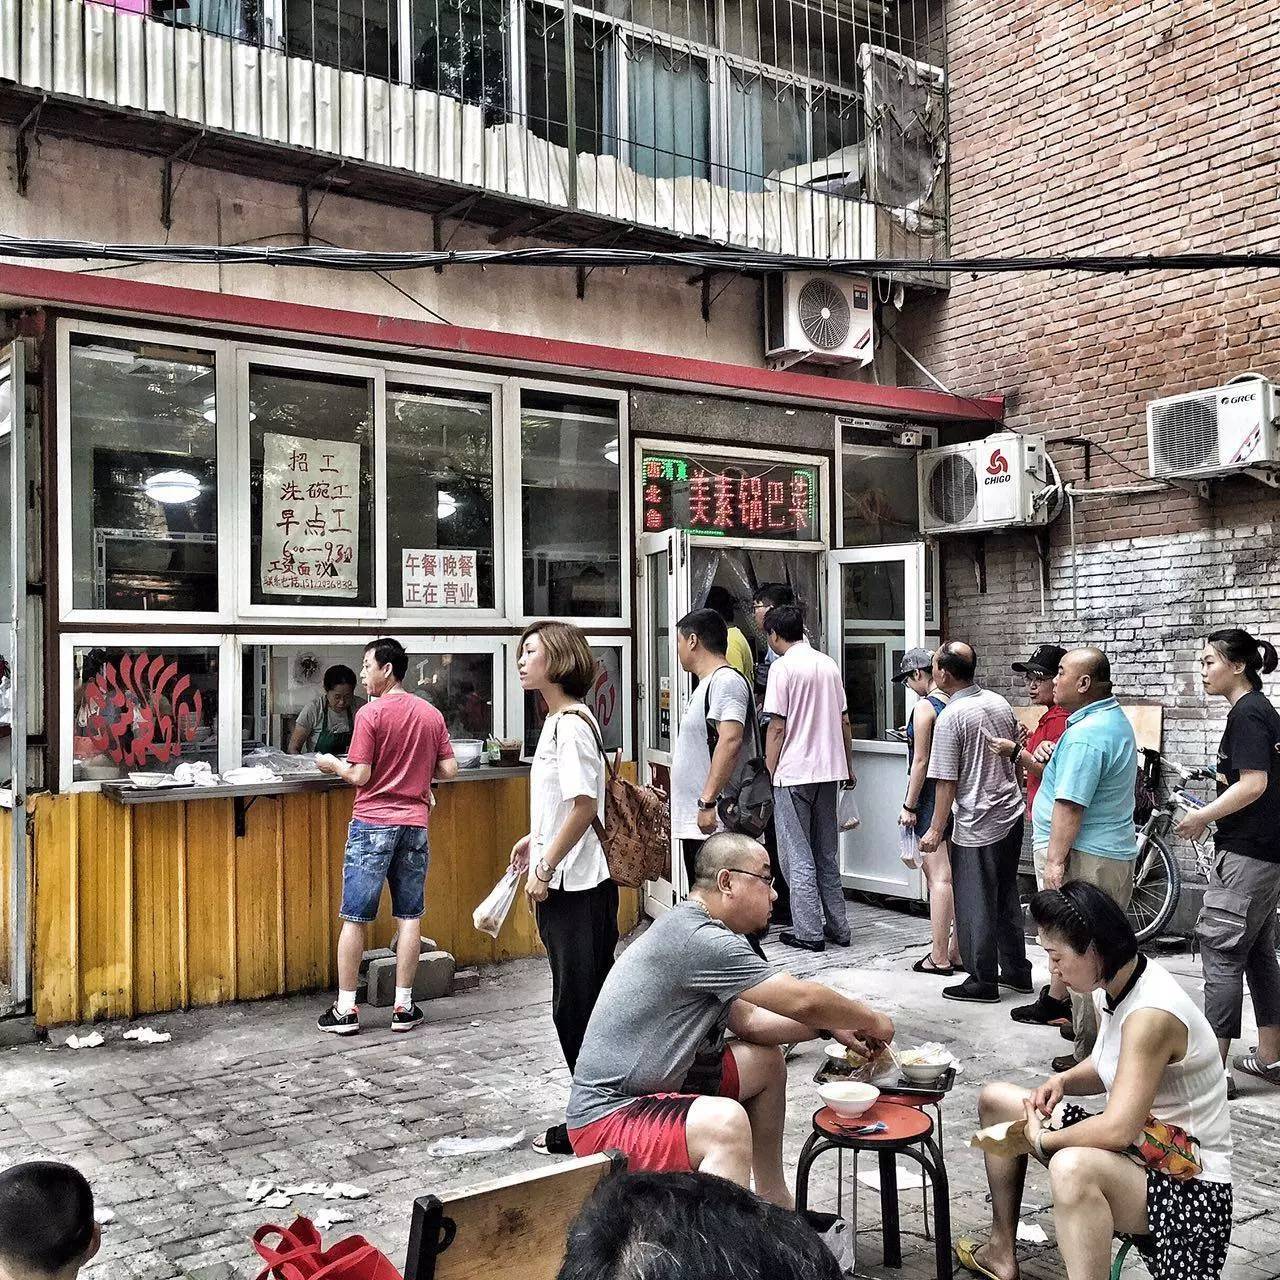 路边摊后时代遍布在九江路附近的那些天津老味儿早点铺抚慰着你忙碌的